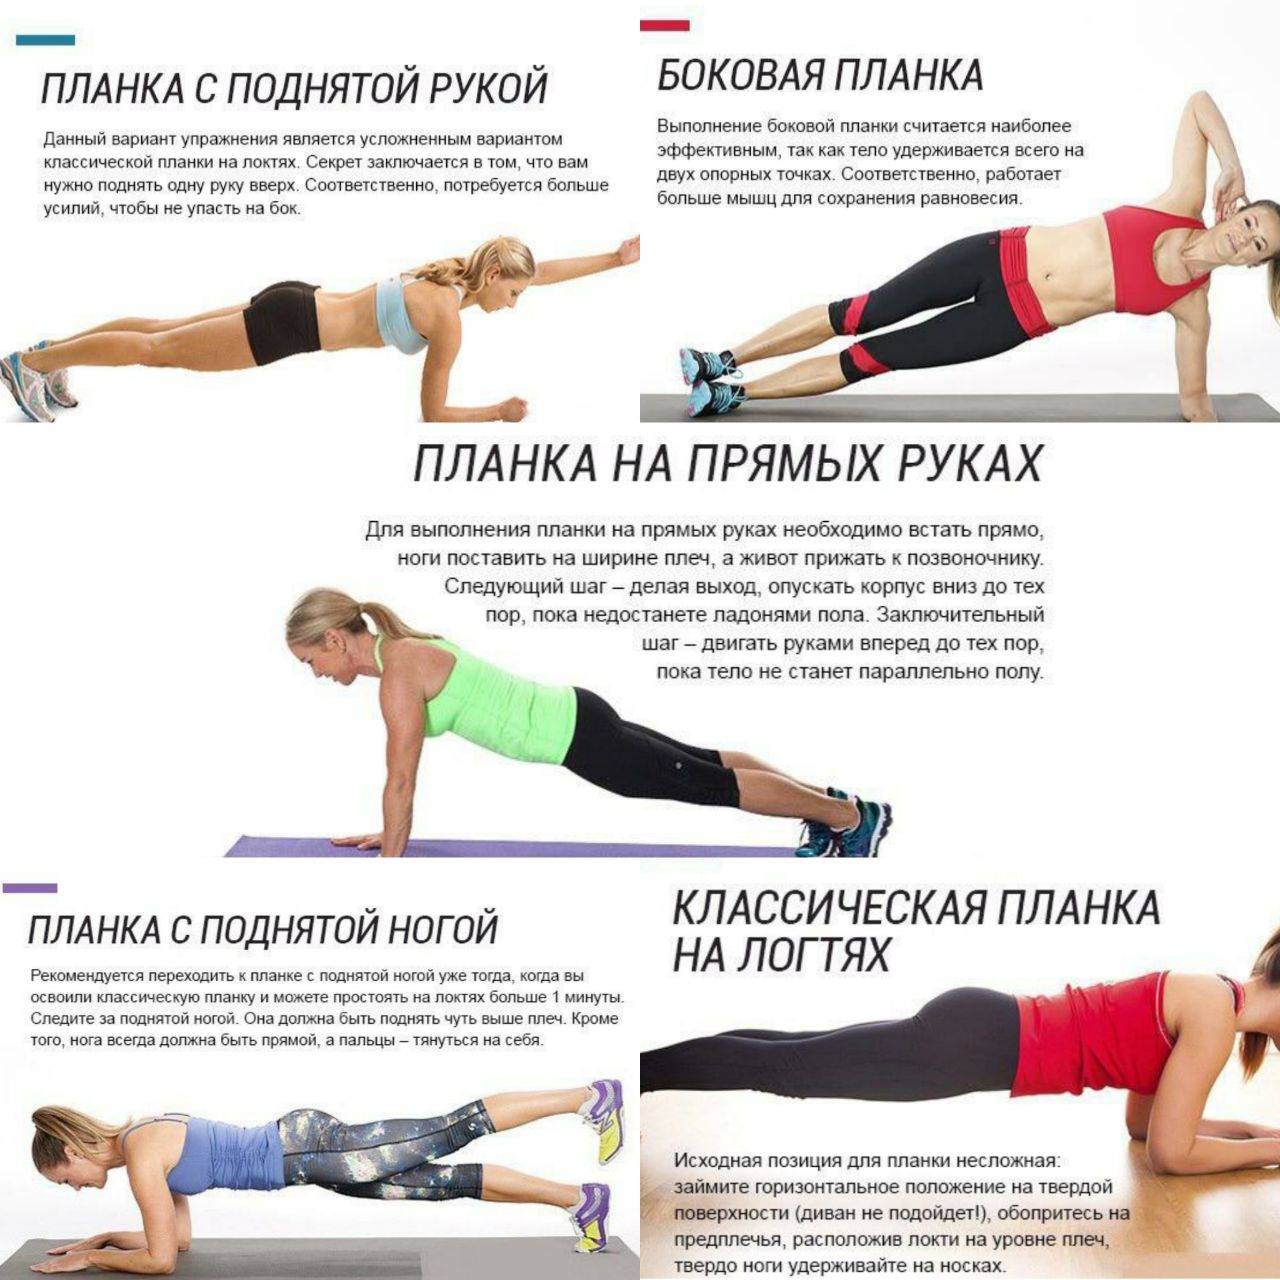 Боковая планка: делаем упражнение правильно | proka4aem.ru